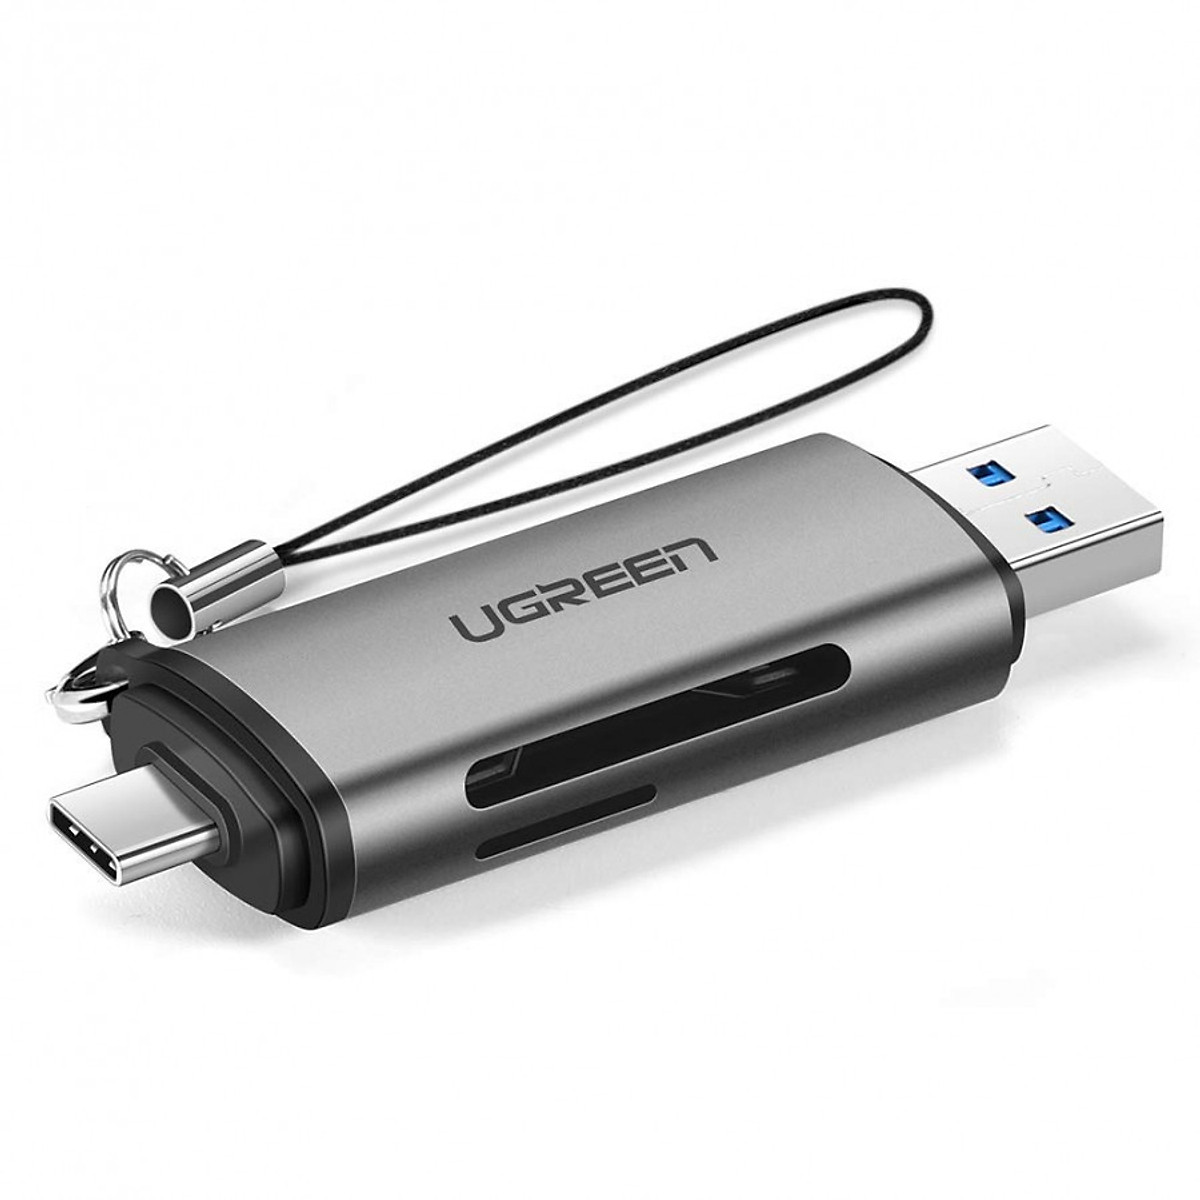 Đầu đọc thẻ nhớ SD, TF chân Type C, USB 3.0 Ugreen 50706 - Hàng chính hãng